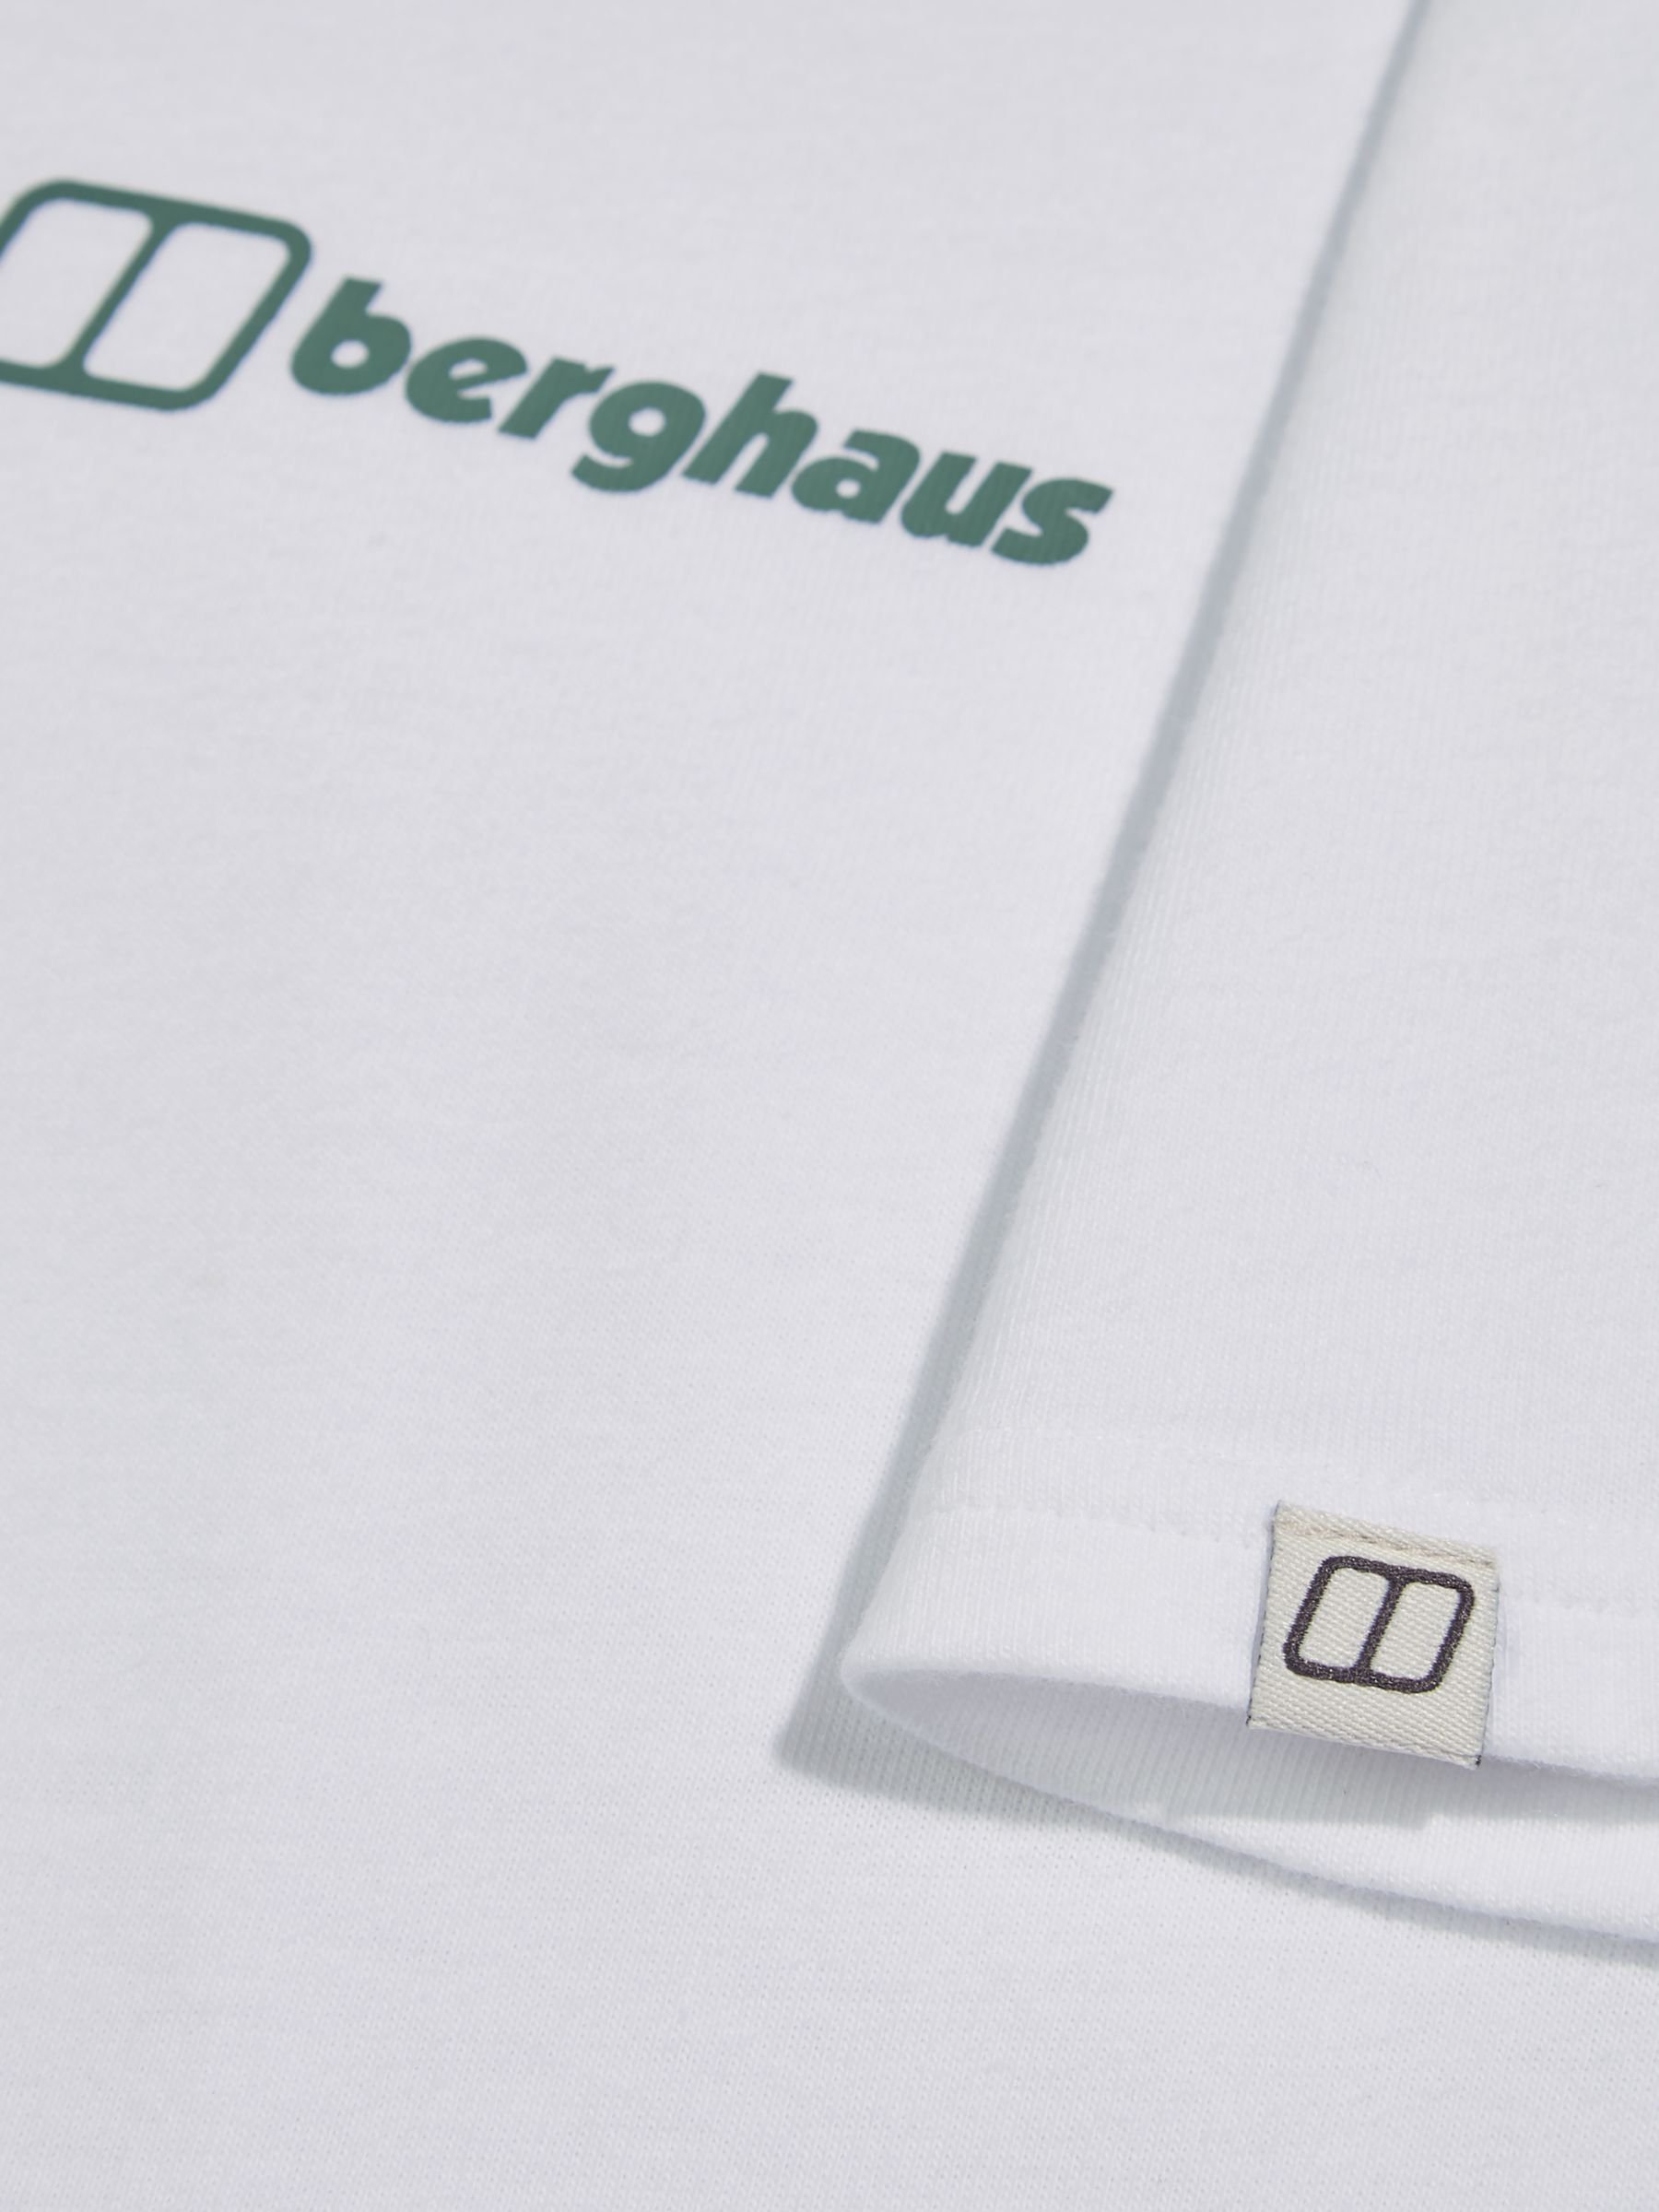 Berghaus Organic Cotton Short Sleeve Graphic T-Shirt, Pure White, M